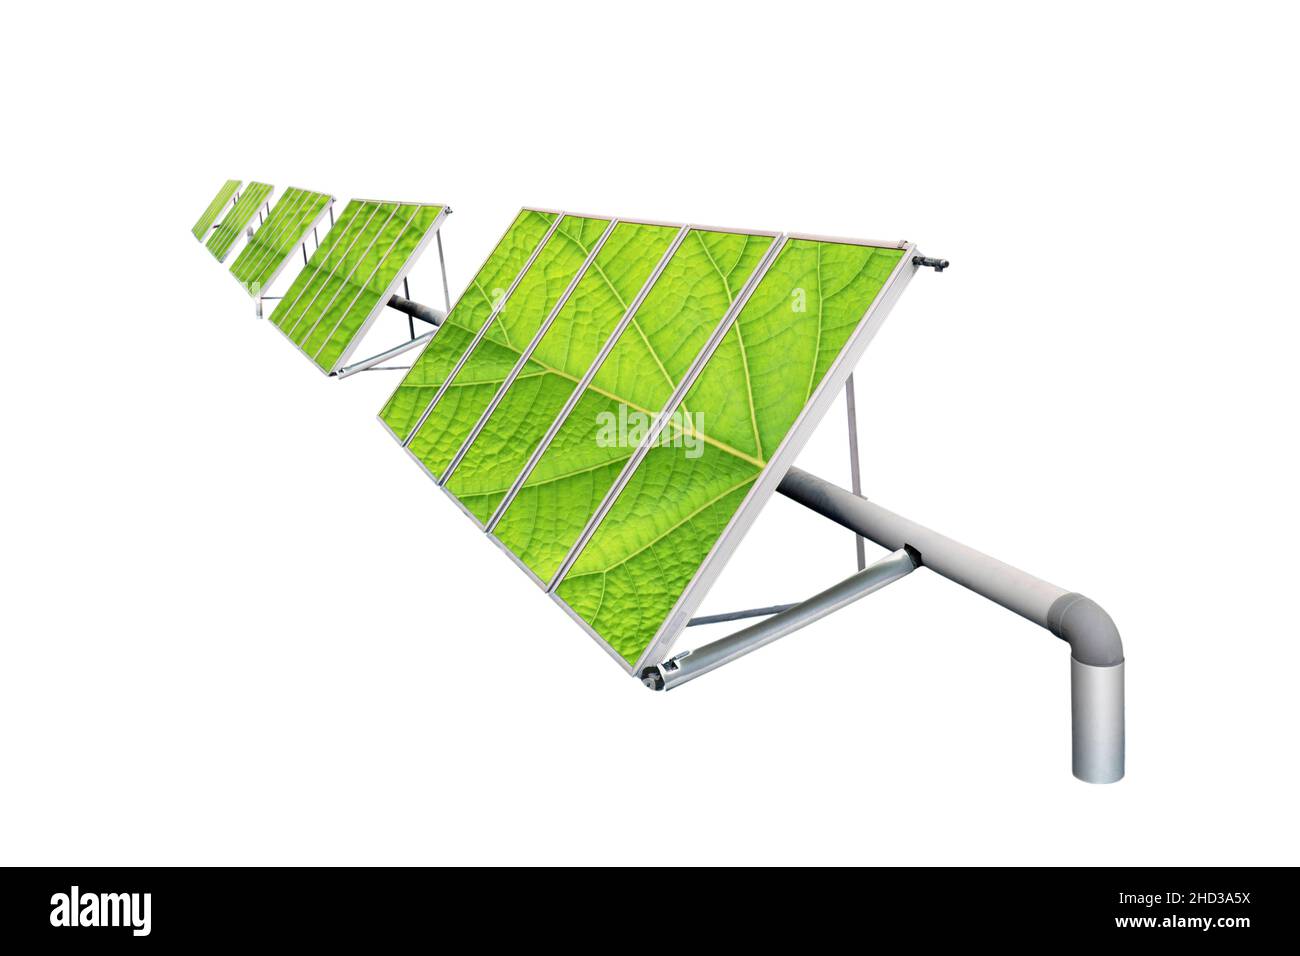 Solarzellen-Paneele mit Pflanzen Blätter Oberfläche isoliert auf weiß. Konzept für grüne Energie. Stockfoto